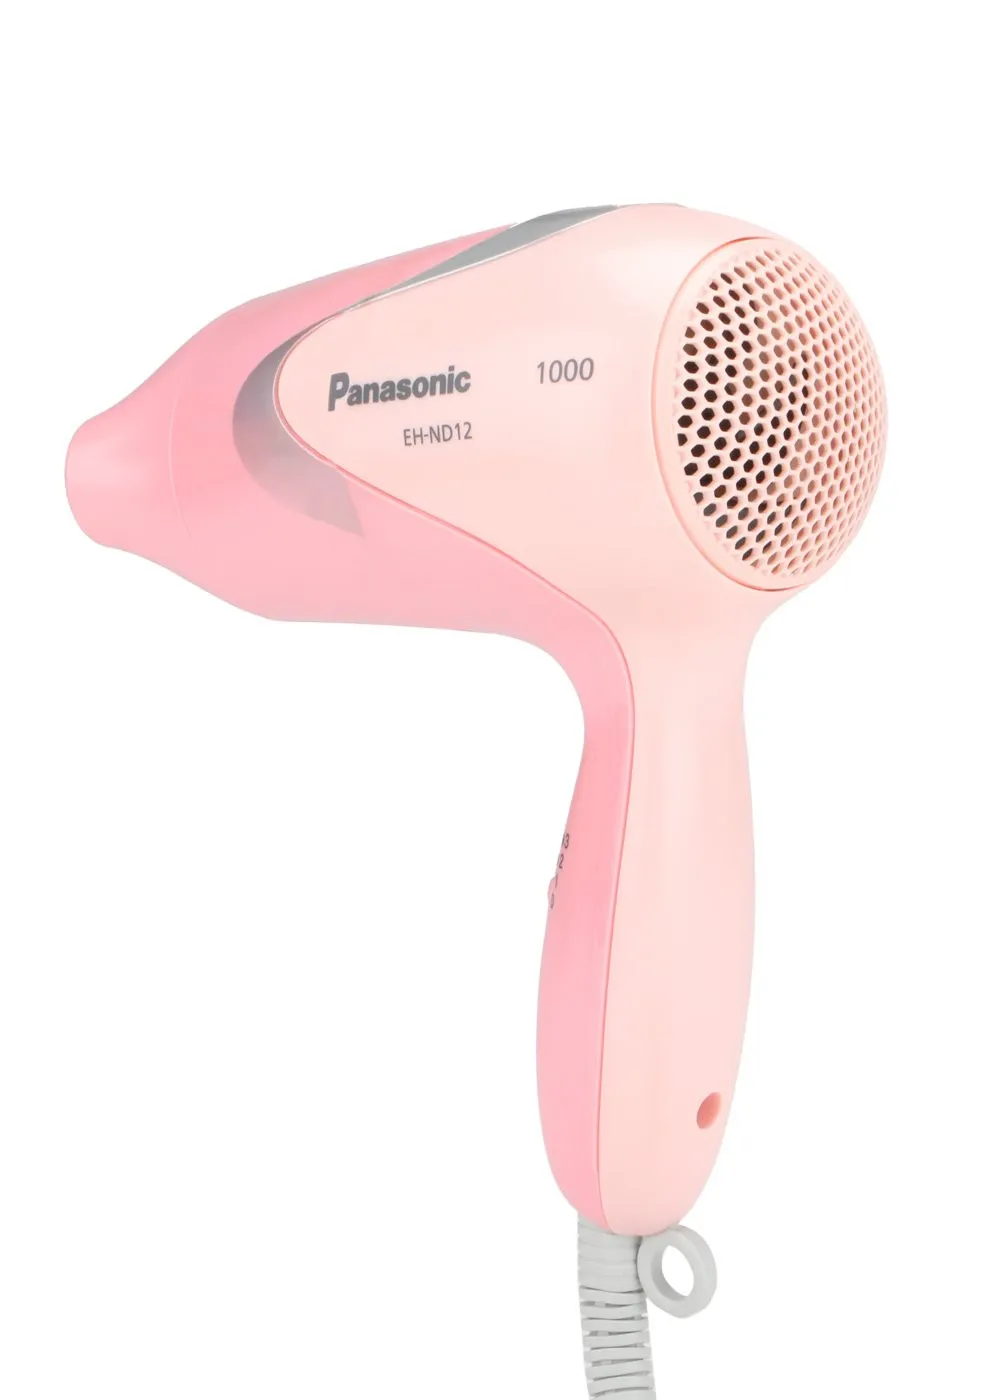 Фен Panasonic EH-ND12 охлаждением воздуха и режимом Turbo Dry(Розовый)#3